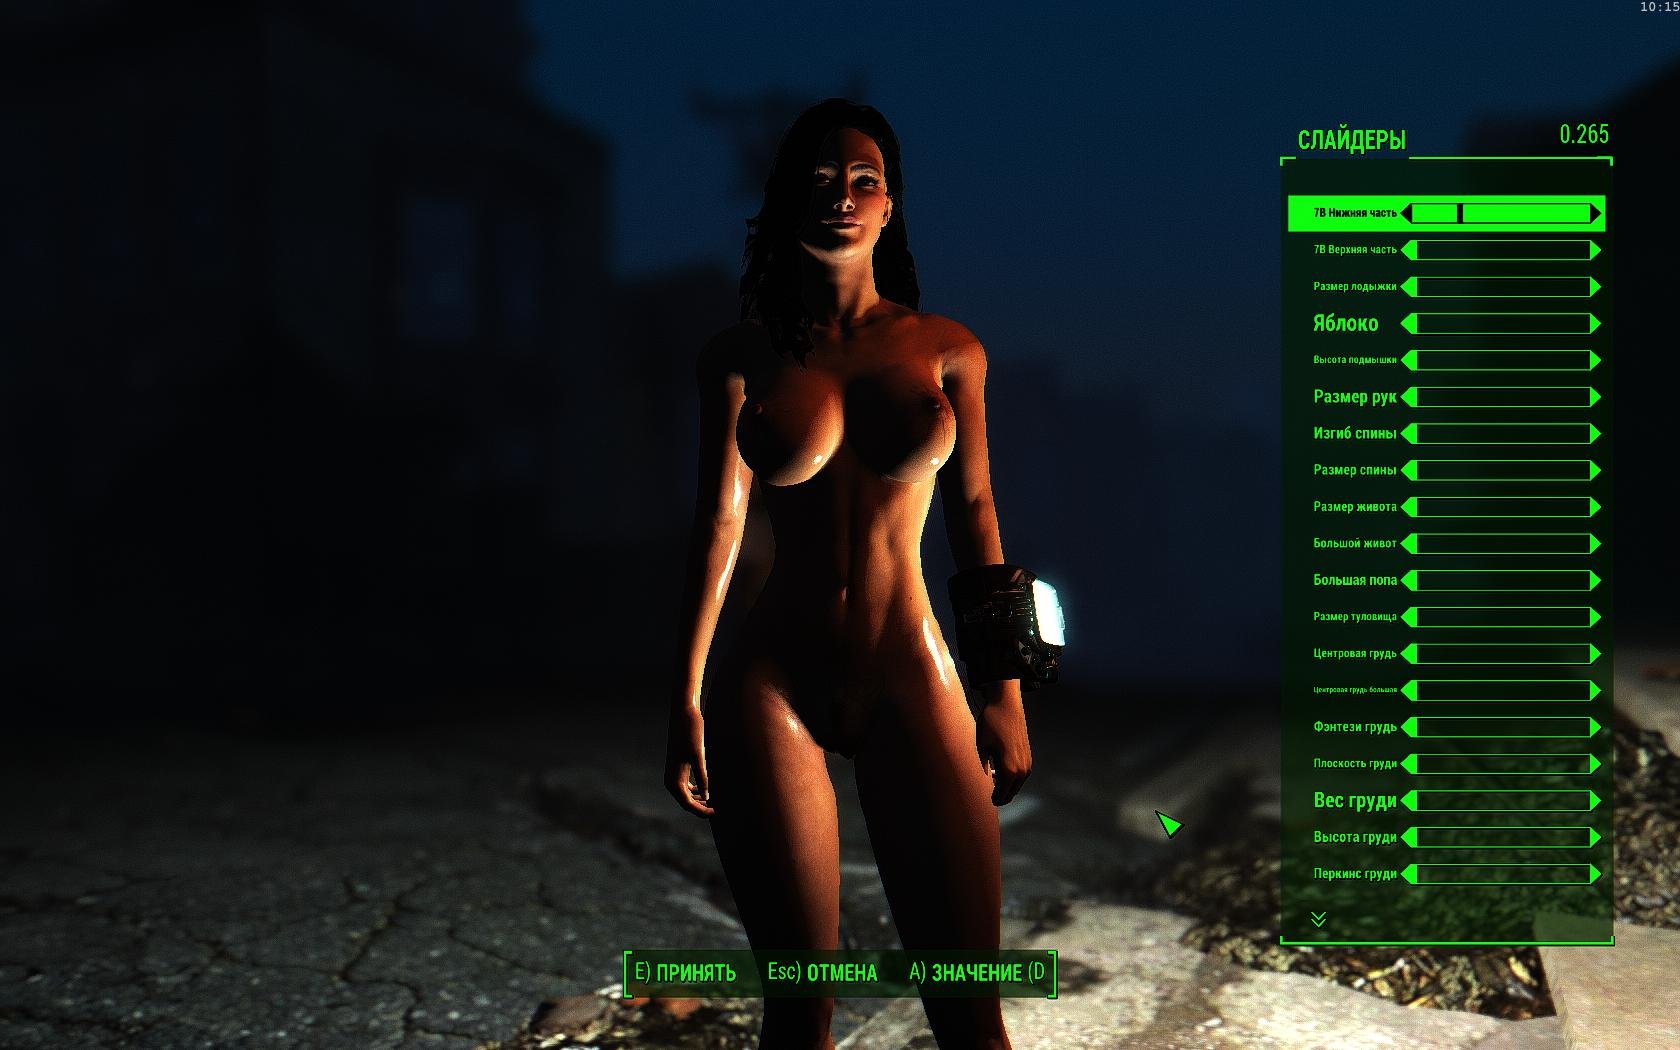 Best Fallout 4 Sex Mods